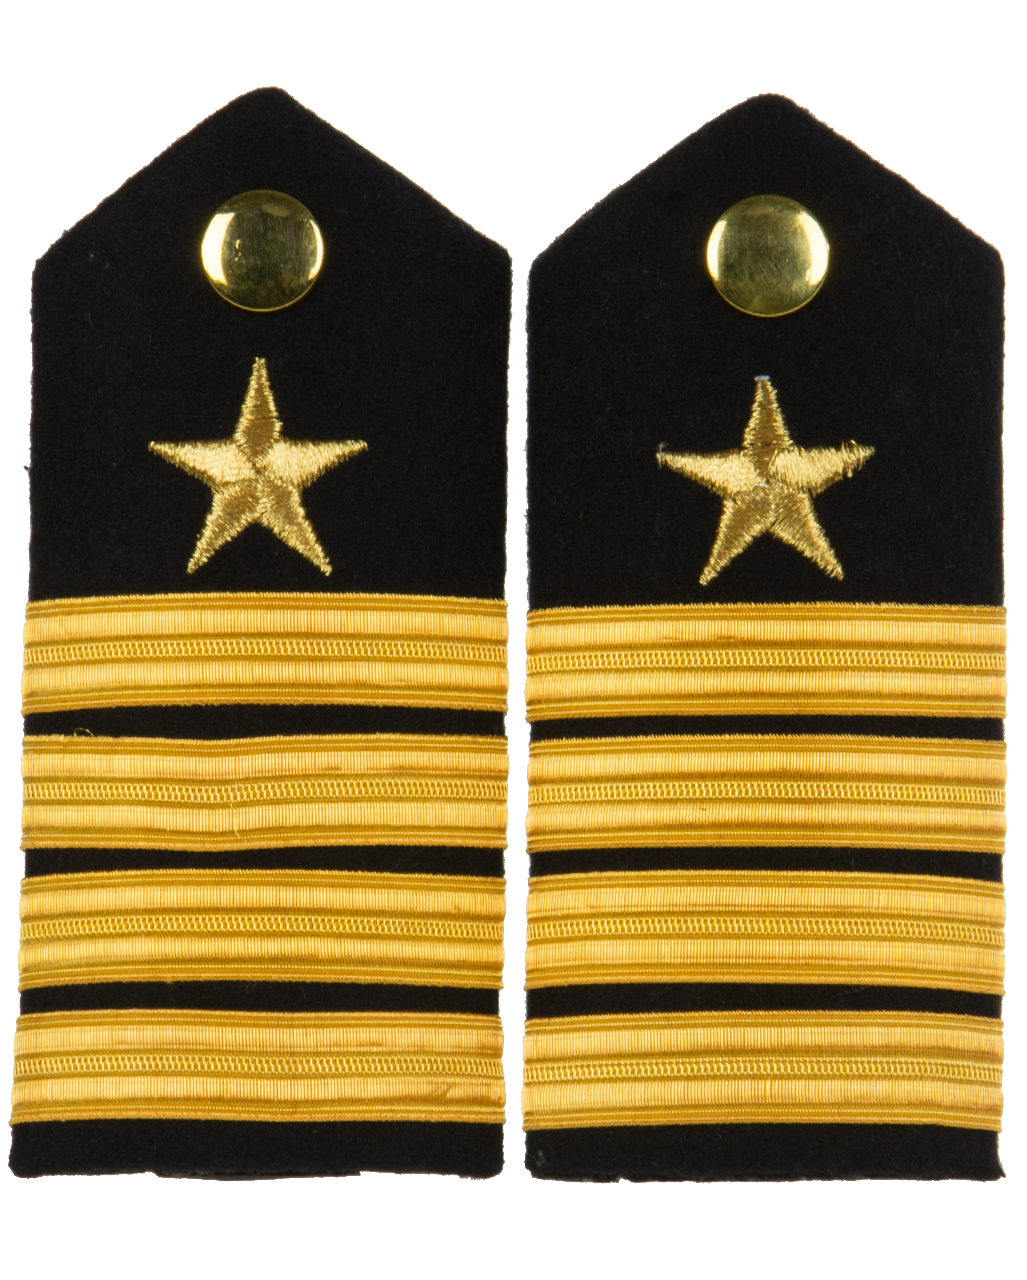 Schulterklappen Rangabzeichen Marine Kapitän gold blau gewebt ##F401A 